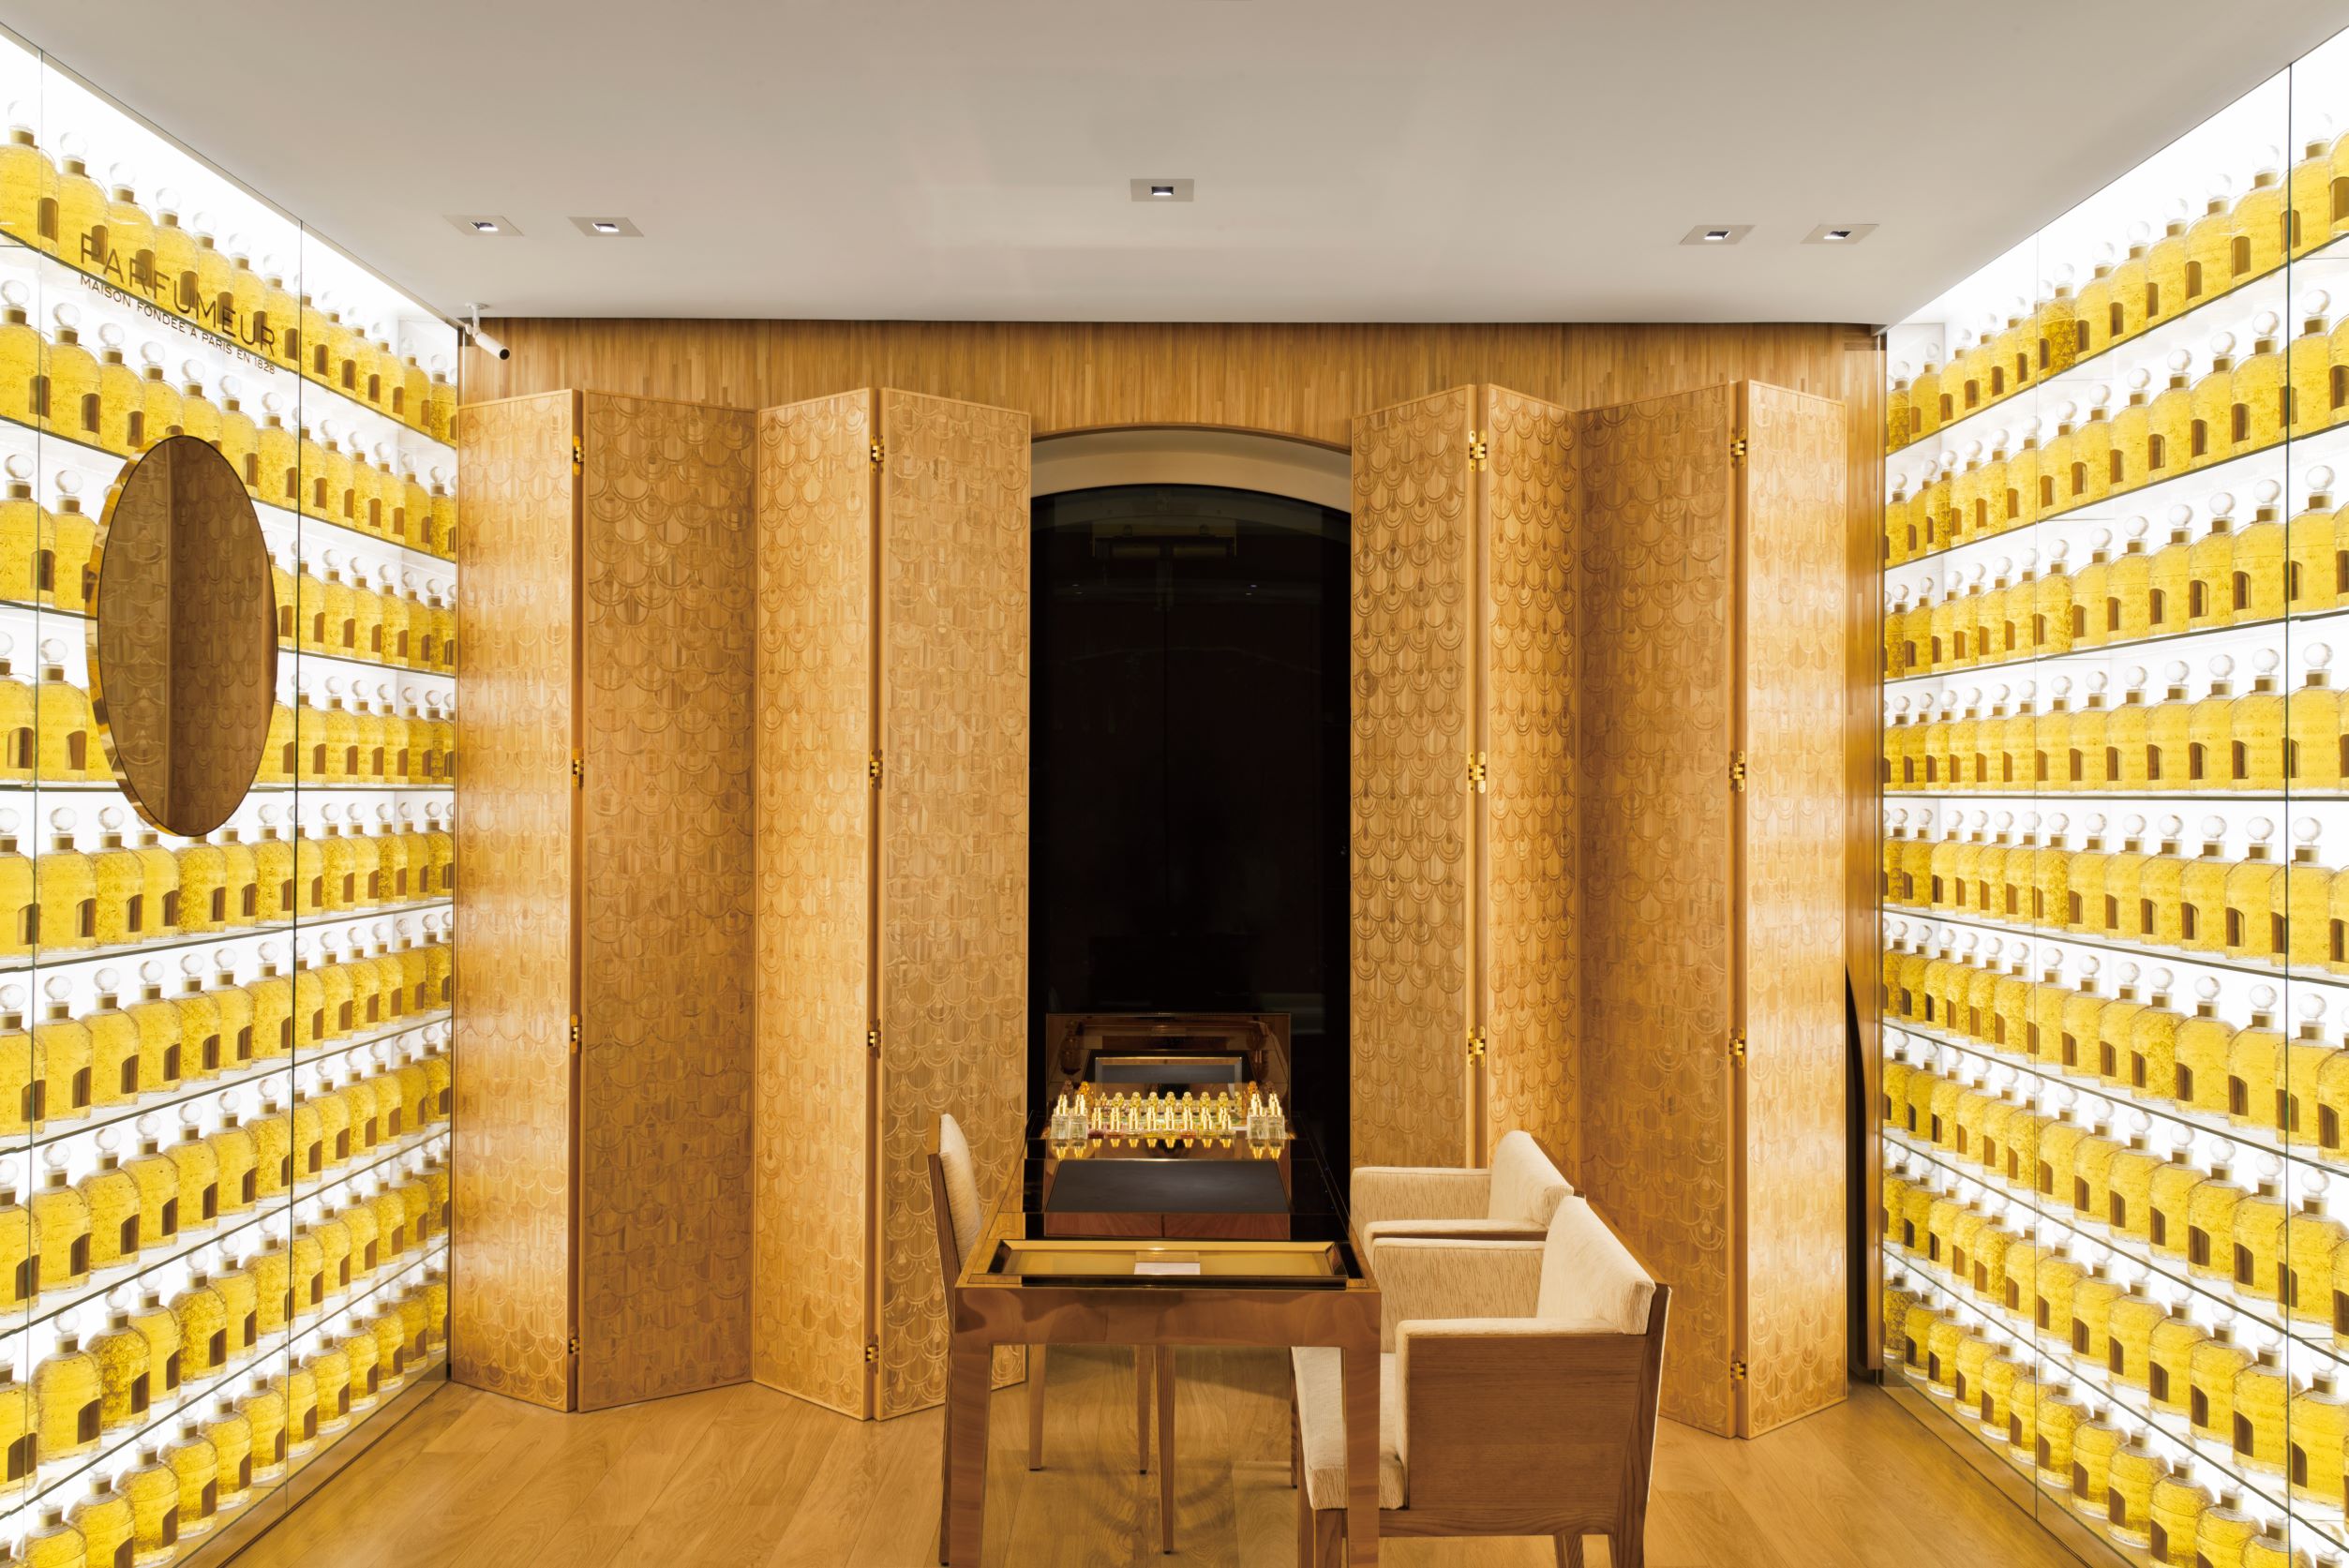 在法國 Guerlain 嬌蘭巴黎香榭麗舍 68 號旗艦店內的香水諮詢區，就是由 Lison de Caunes 操刀製作麥稈裝飾屏風與牆面。